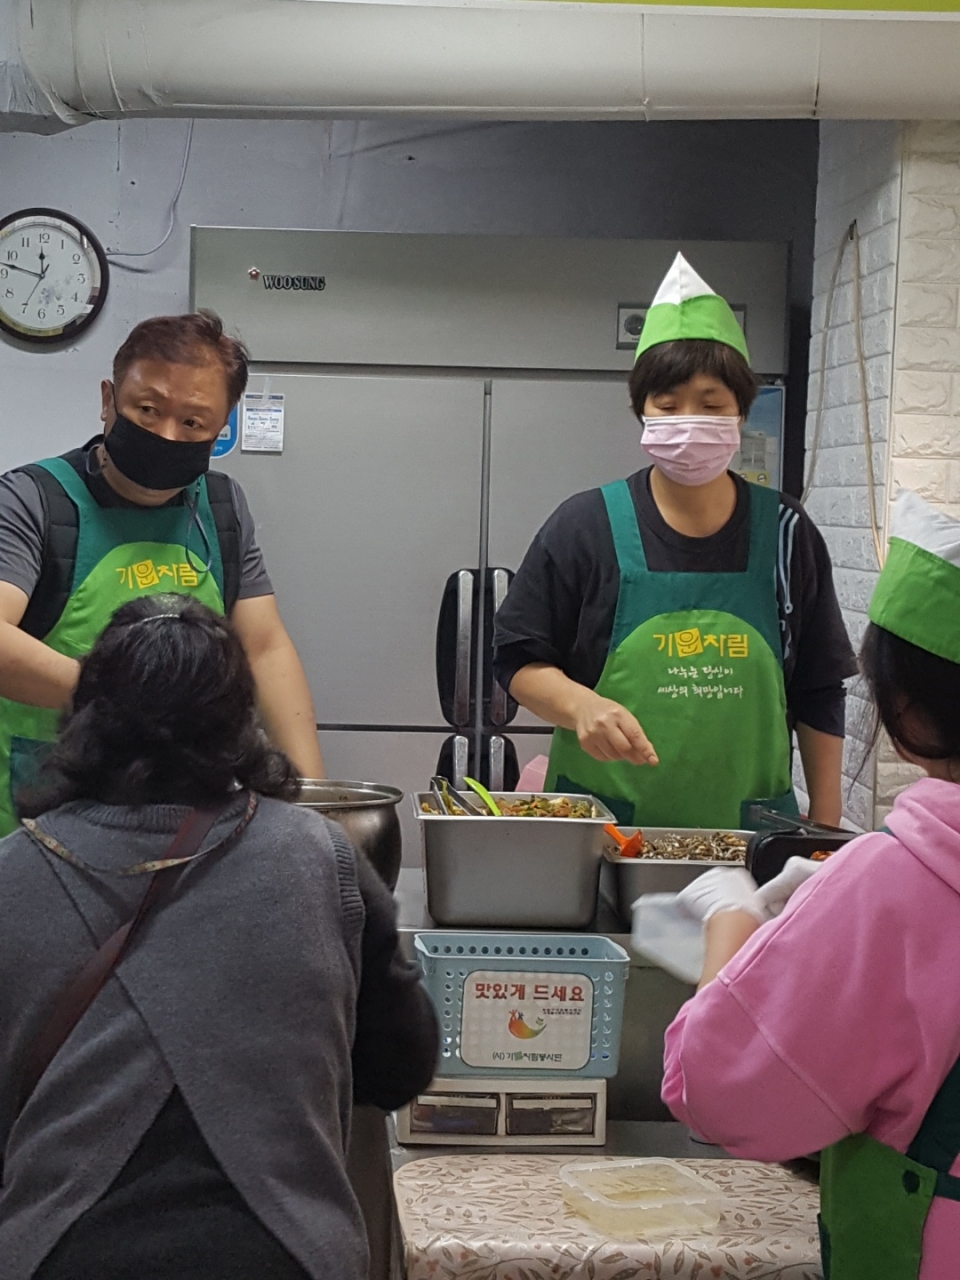 ▲ 자원봉사자들이 기운차림 식당에서 배식 봉사를 하고 있다. 자원봉사자들은 음식 준비부터 배식까지 일을 도맡아 한다.